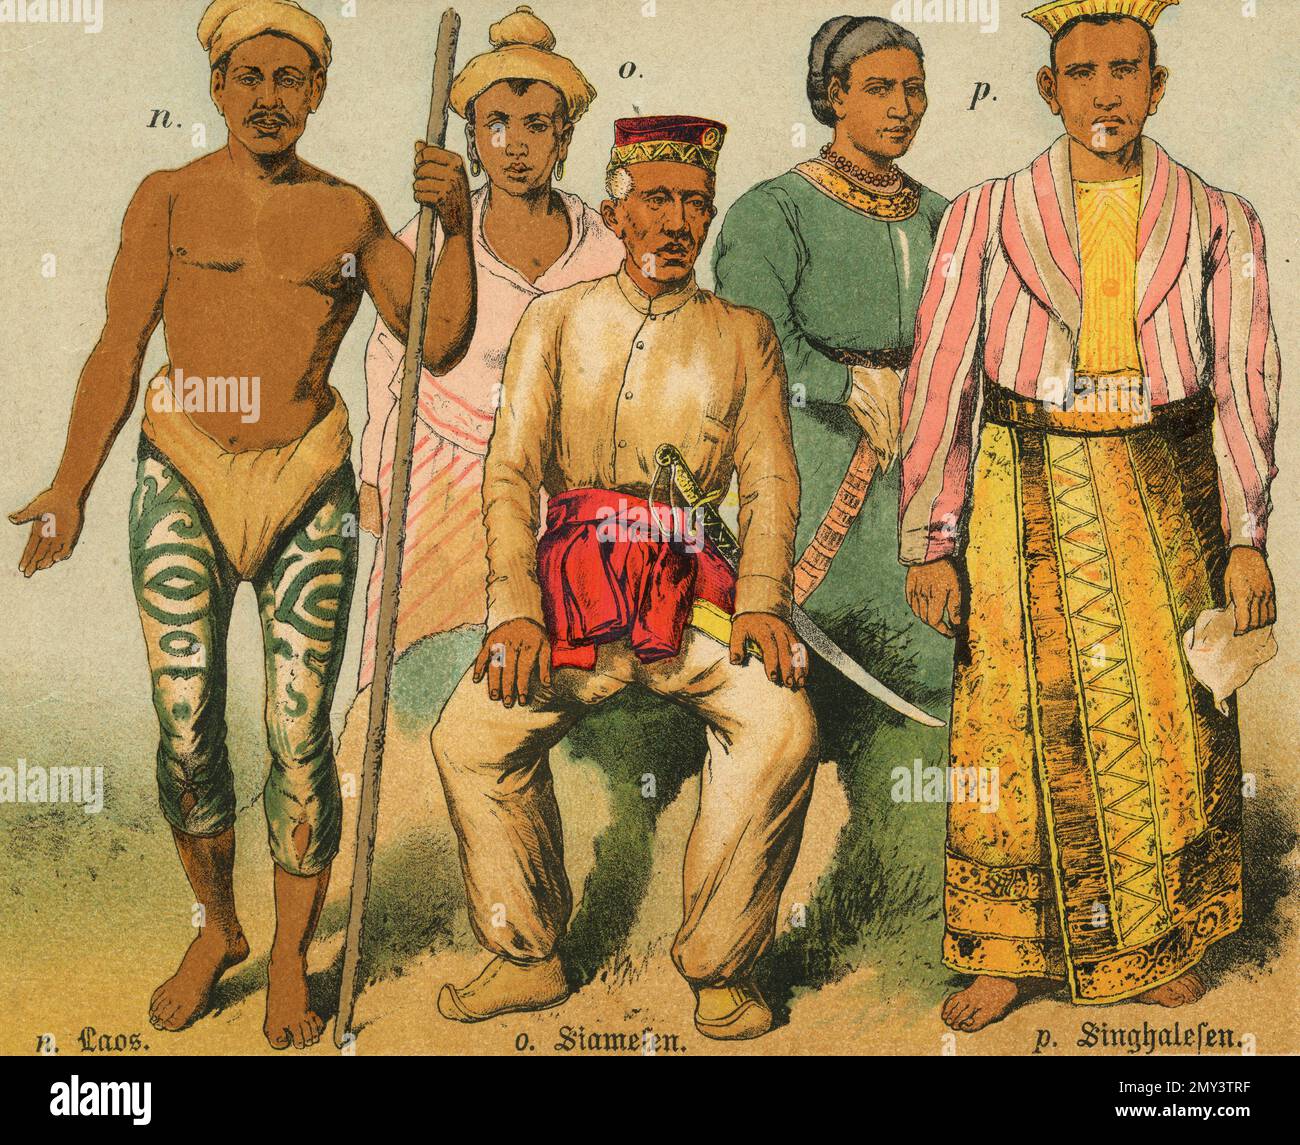 Popolazioni del mondo: Laos, Siamese, Singhalese, illustrazione a colori, Germania 1800s Foto Stock